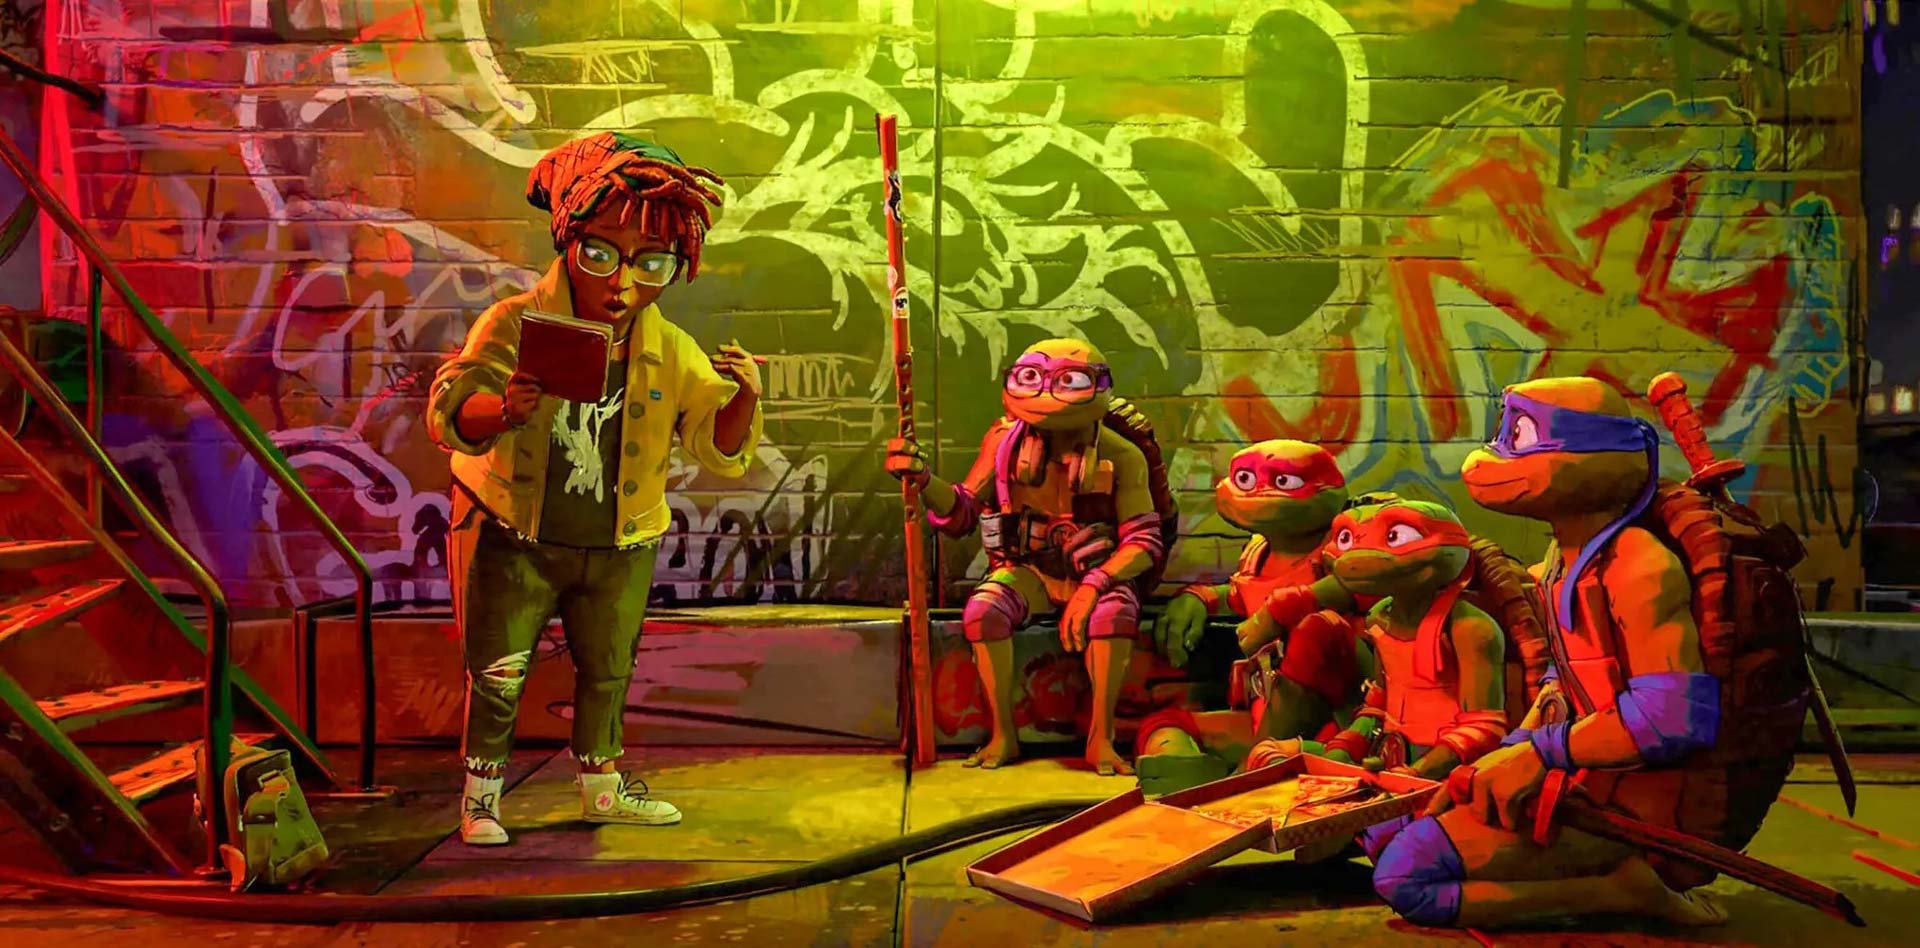 لاکپشتهای نیجا چهار بردارد نشسته در مقابل یک دیوار با گرافیتی